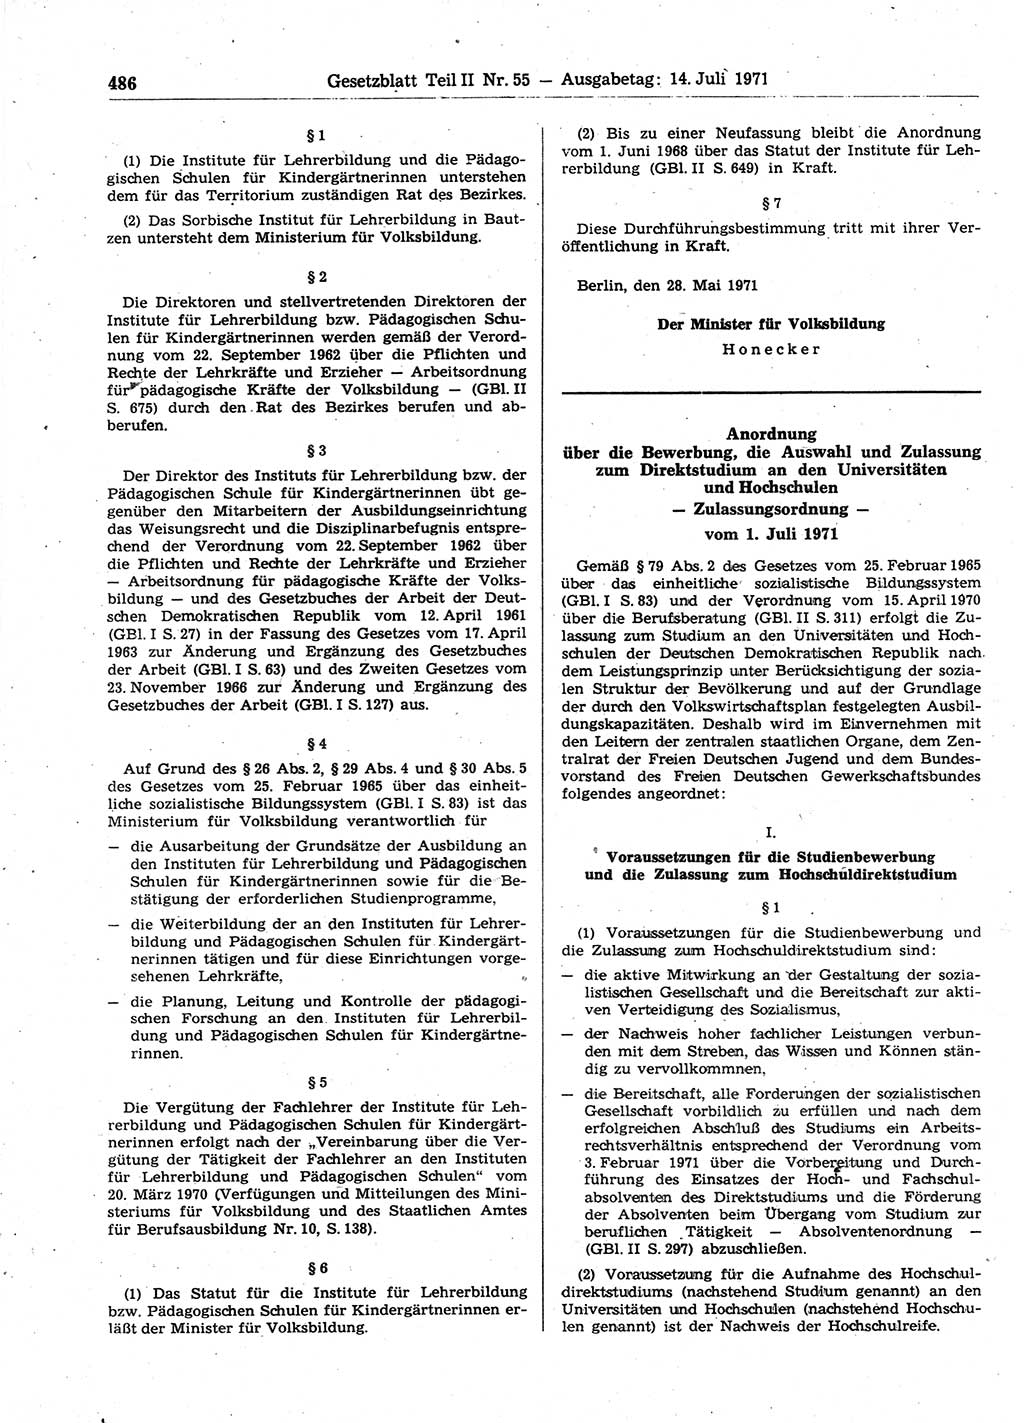 Gesetzblatt (GBl.) der Deutschen Demokratischen Republik (DDR) Teil ⅠⅠ 1971, Seite 486 (GBl. DDR ⅠⅠ 1971, S. 486)